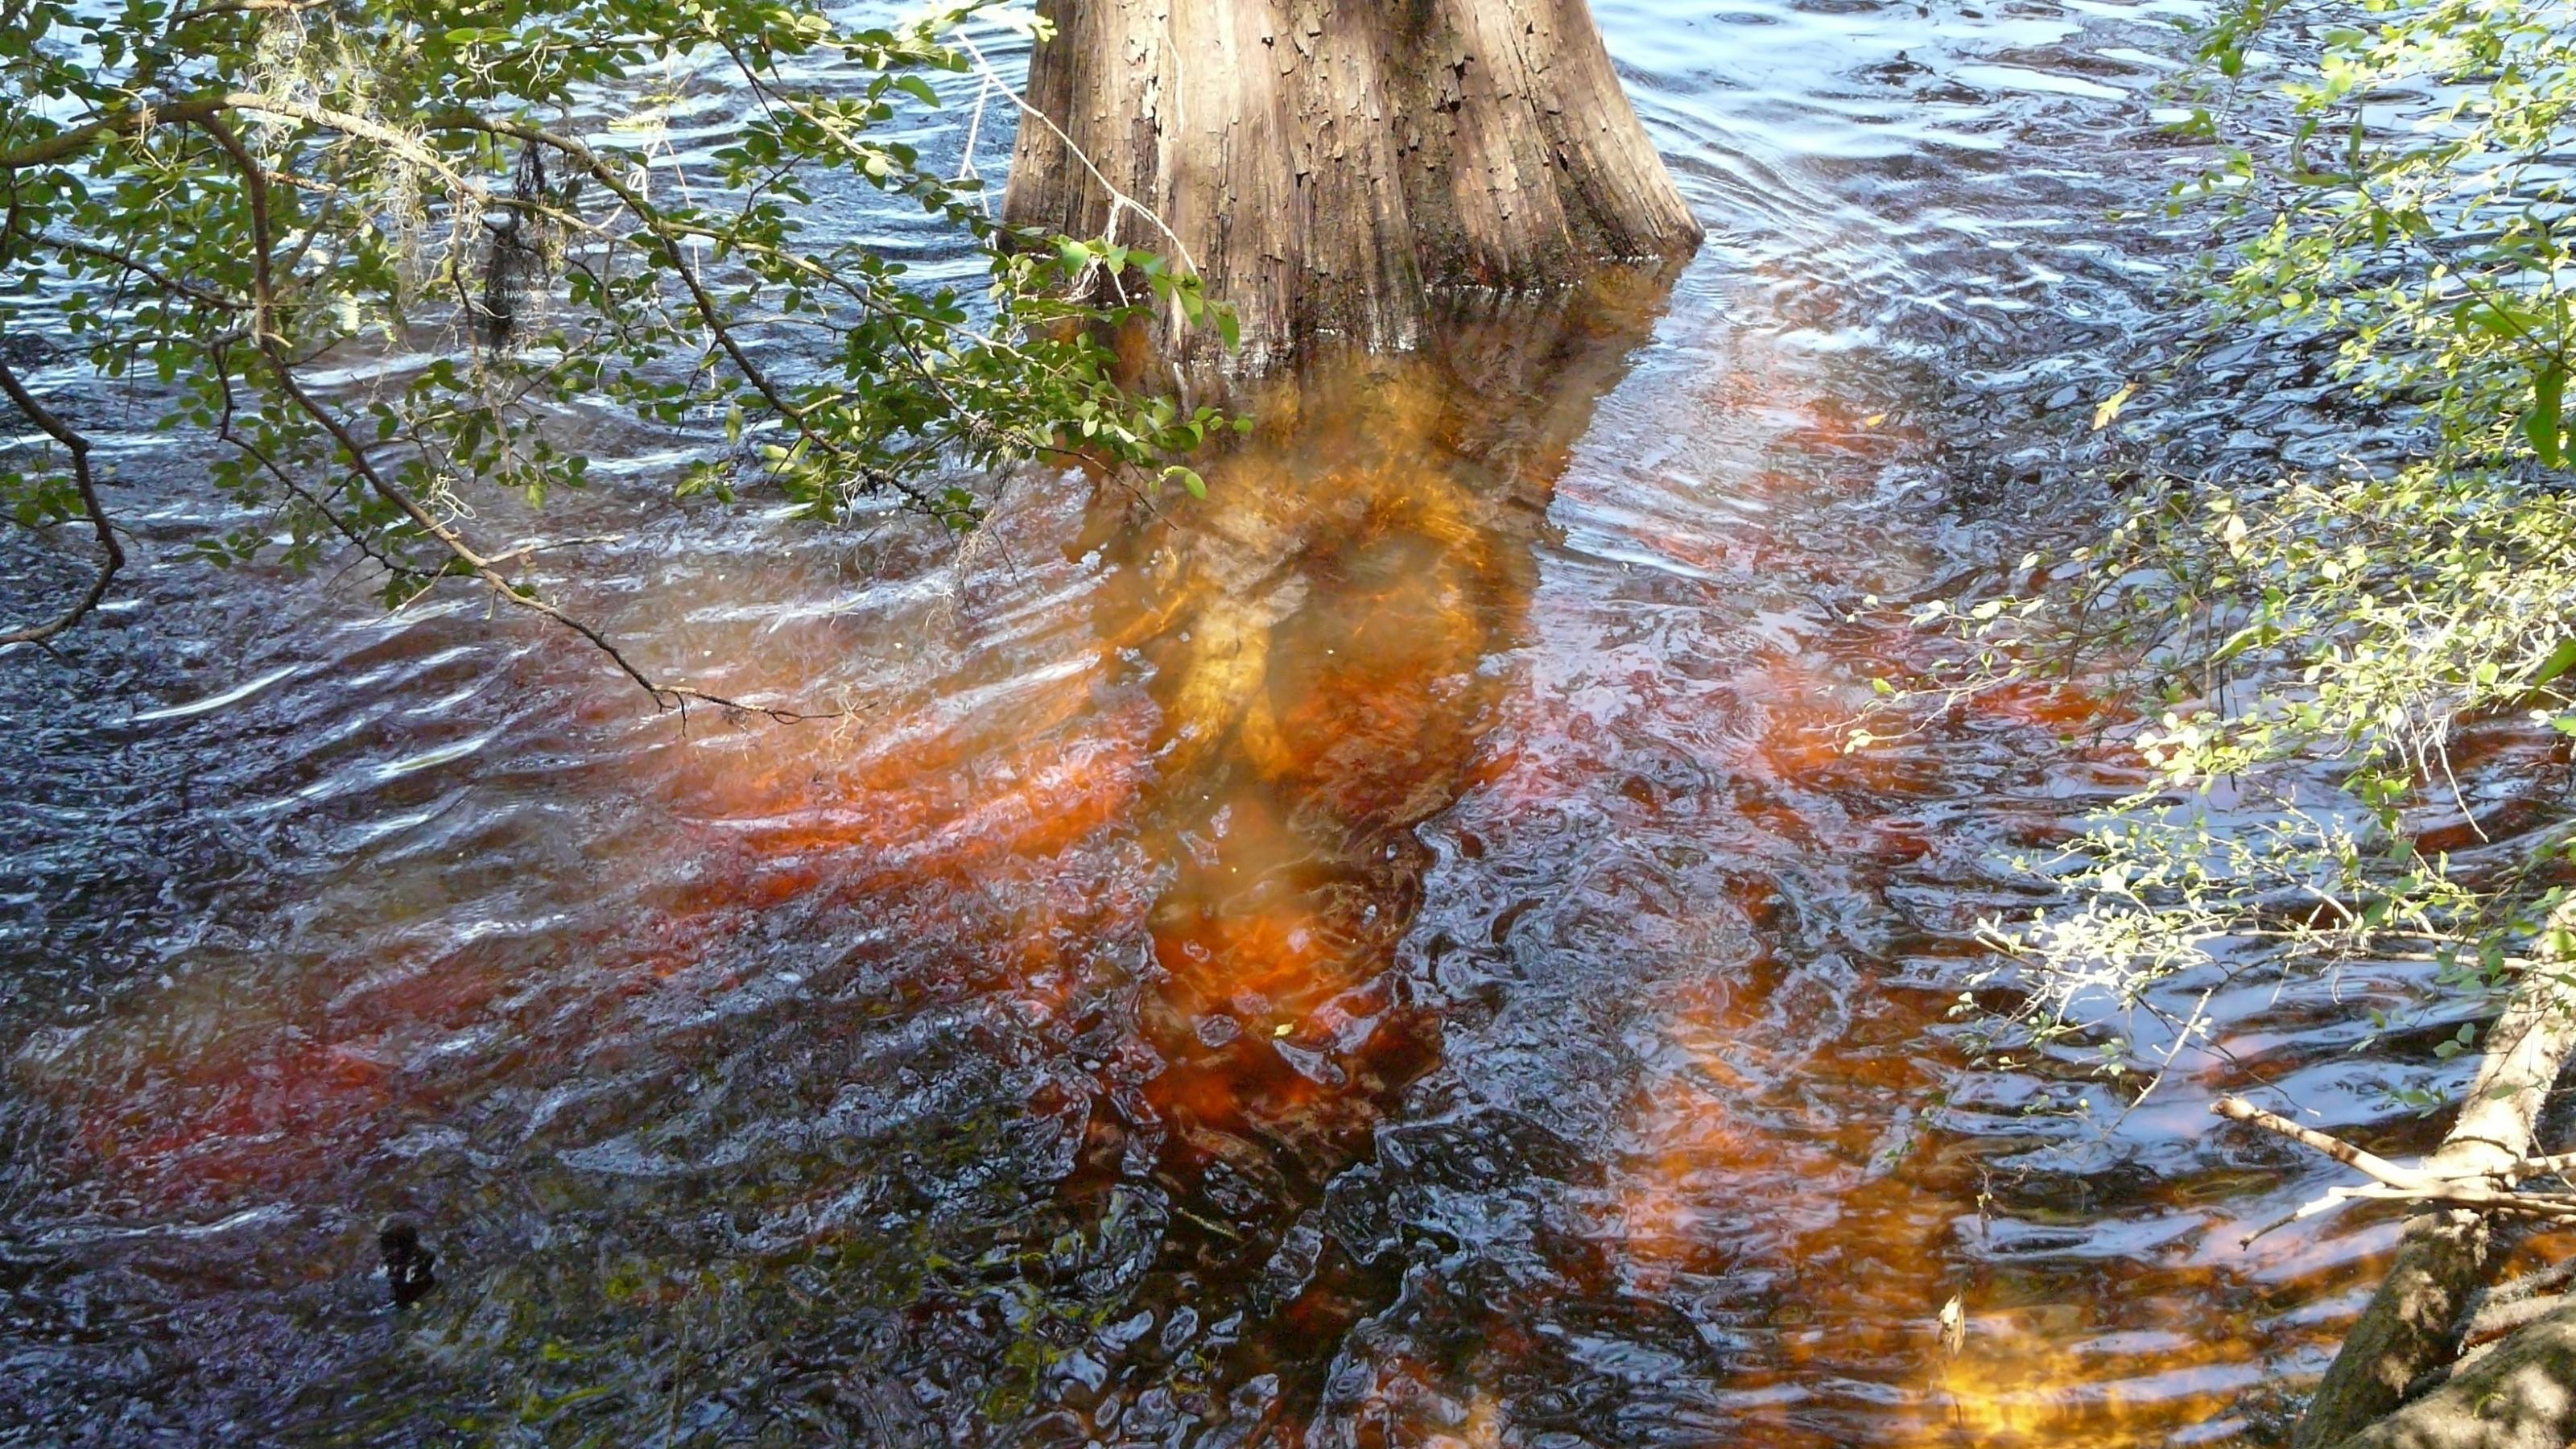 Dunkelbraune Gerbsäure bildet sich im Fluss Blackwater um einen Zypressenbaum im Hart Springs County Park in Florida.